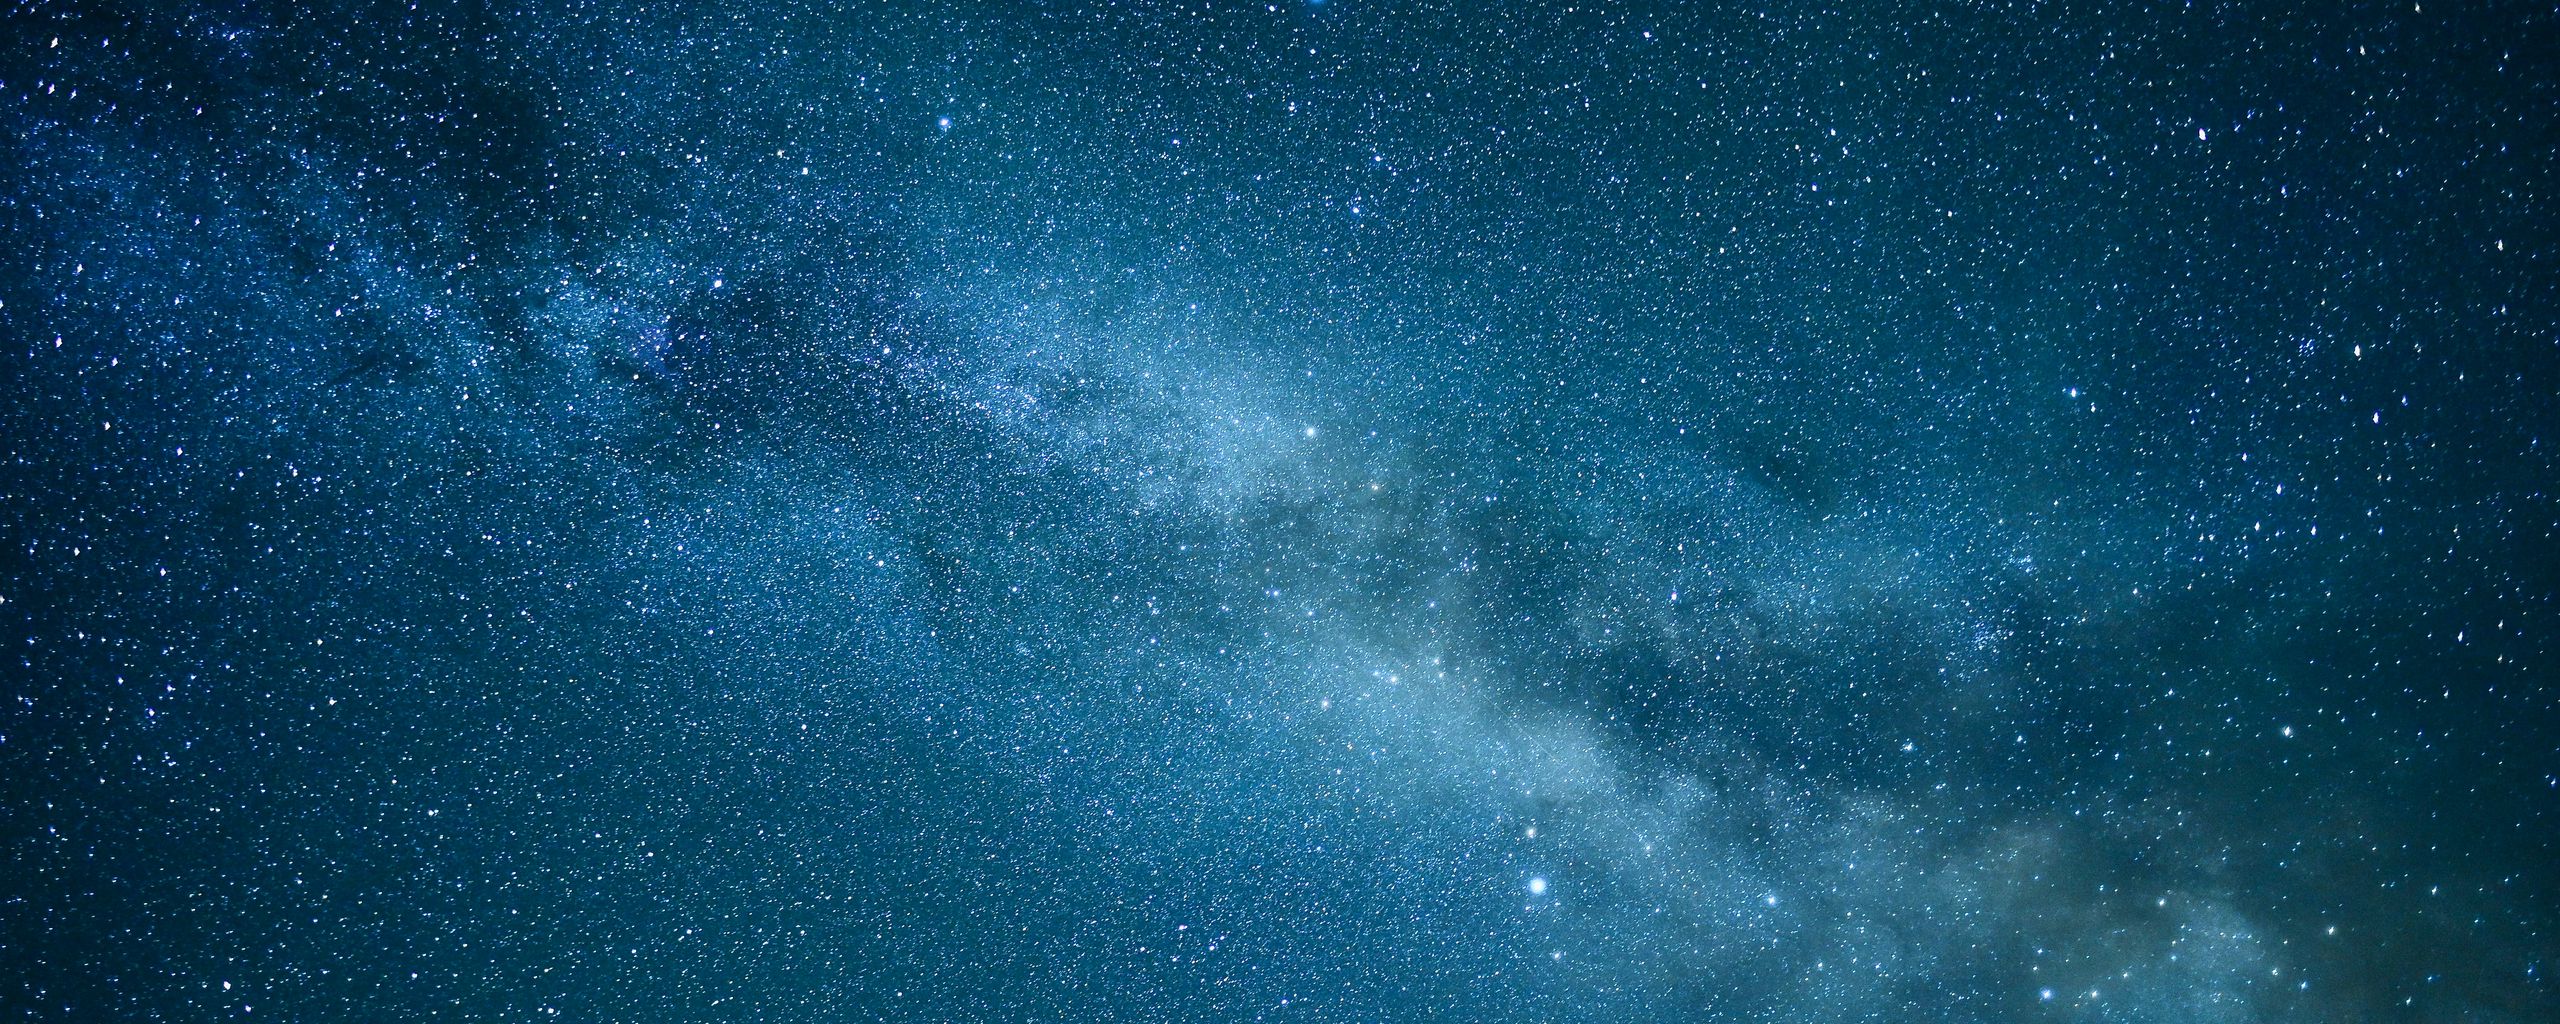 Tạo ra một không gian độc đáo và kinh ngạc với hình nền đêm sao và vật thể không gian ultrawide. Bạn sẽ được đưa mình vào một không gian đầy ảo giác và thú vị, ngắm nhìn những vật thể lạ lẫm và những hình ảnh siêu thực của vũ trụ.